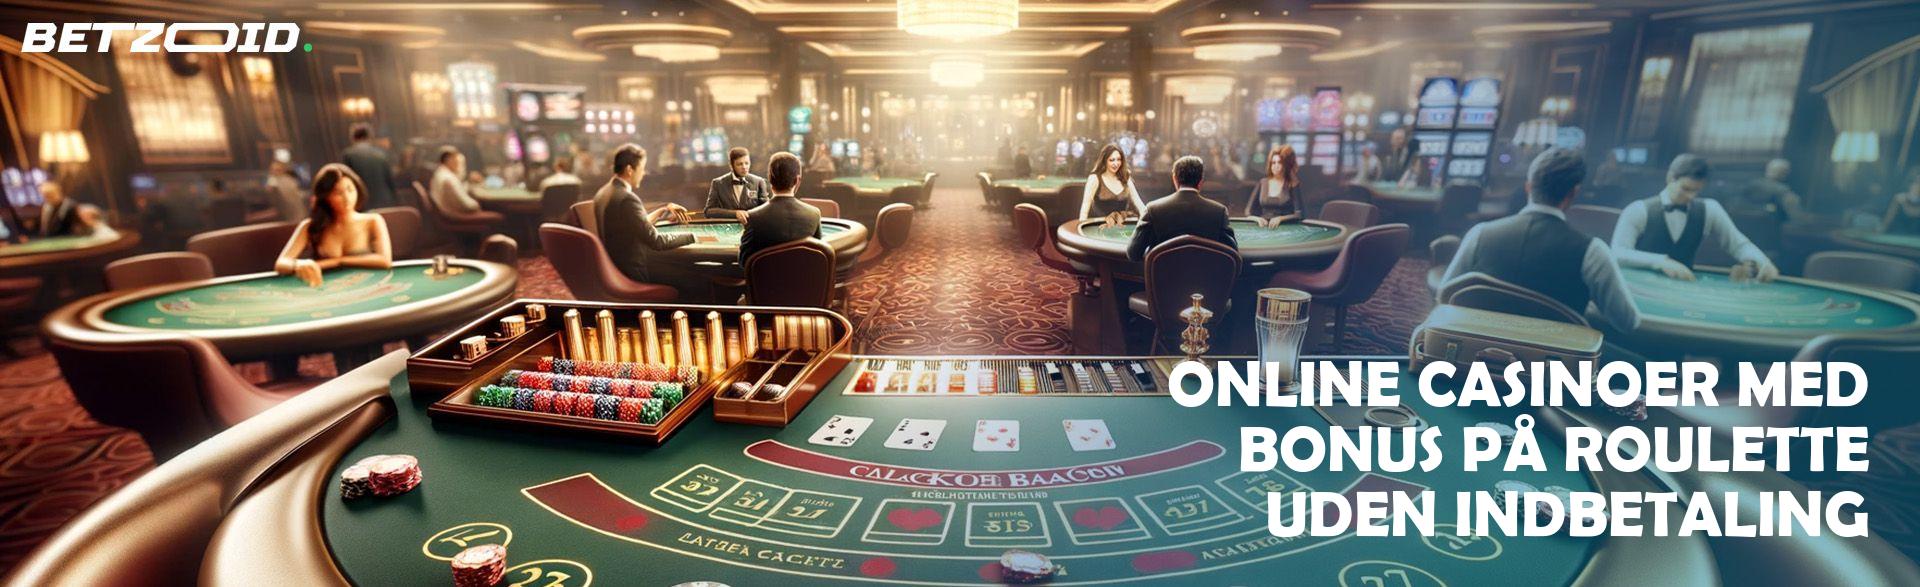 Online Casinoer med Bonus på Roulette uden Indbetaling.